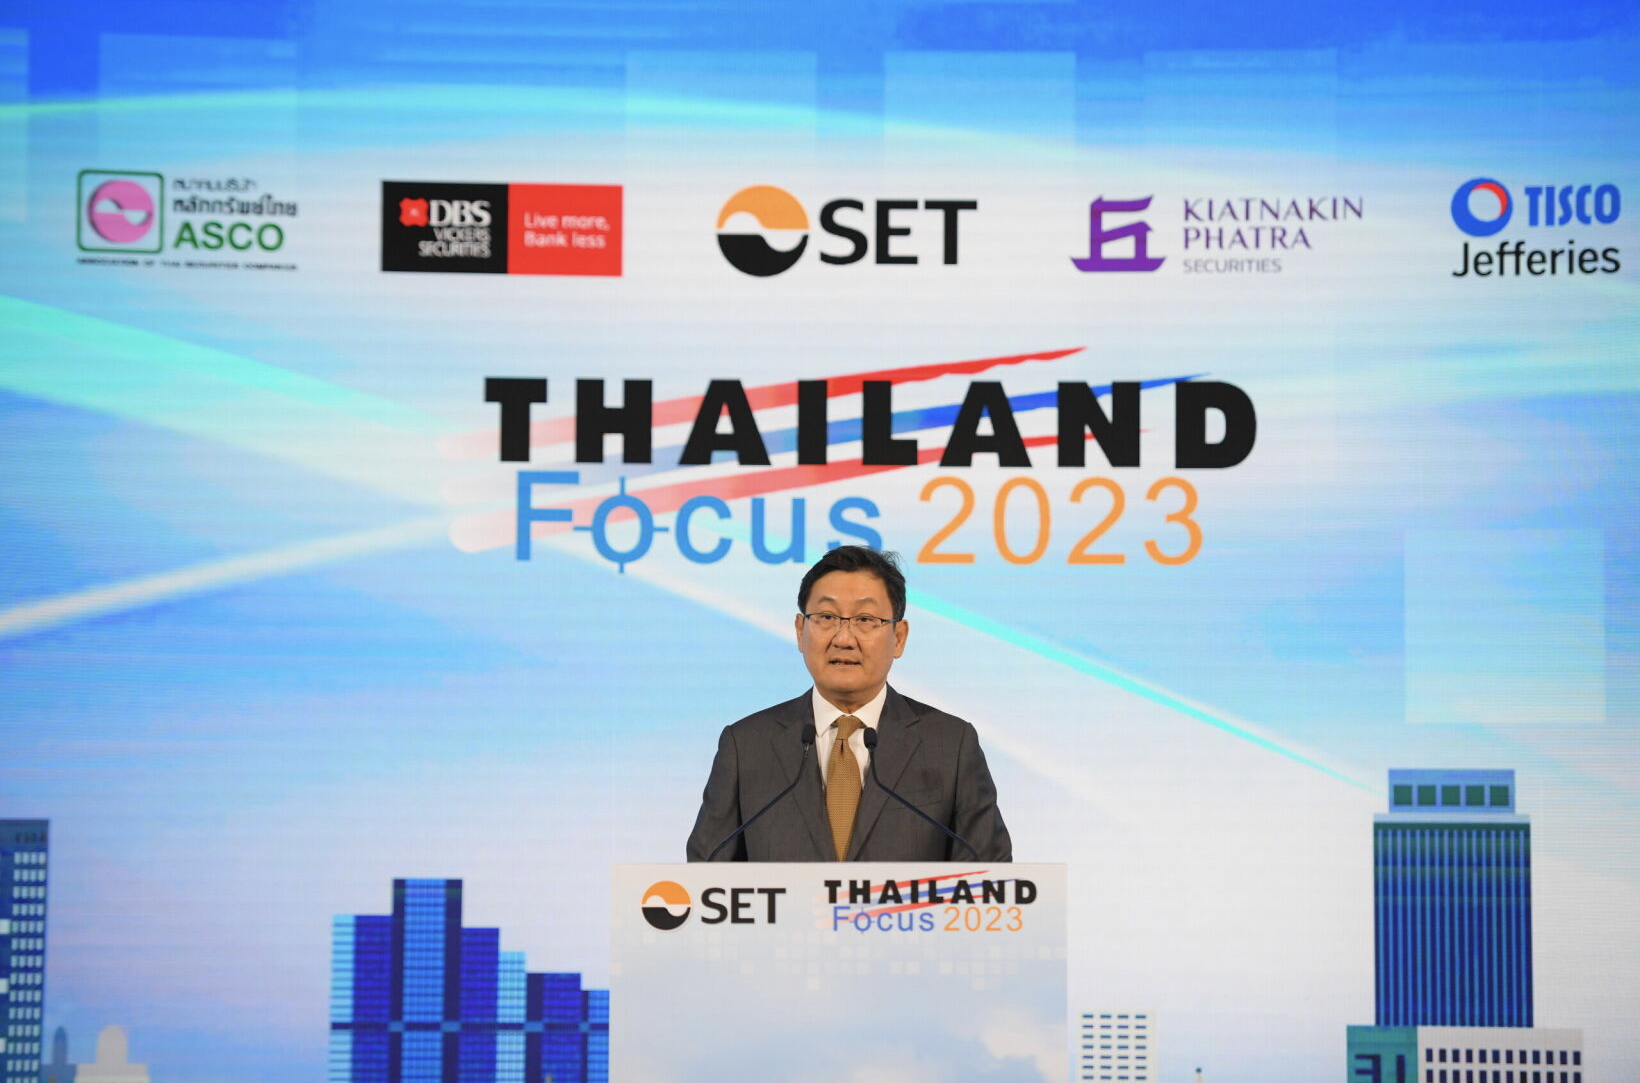 ตลท.เผย นักลงทุนสถาบันทั่วโลก 200 ราย - บจ.118 ราย ร่วมงาน Thailand Focus 2023